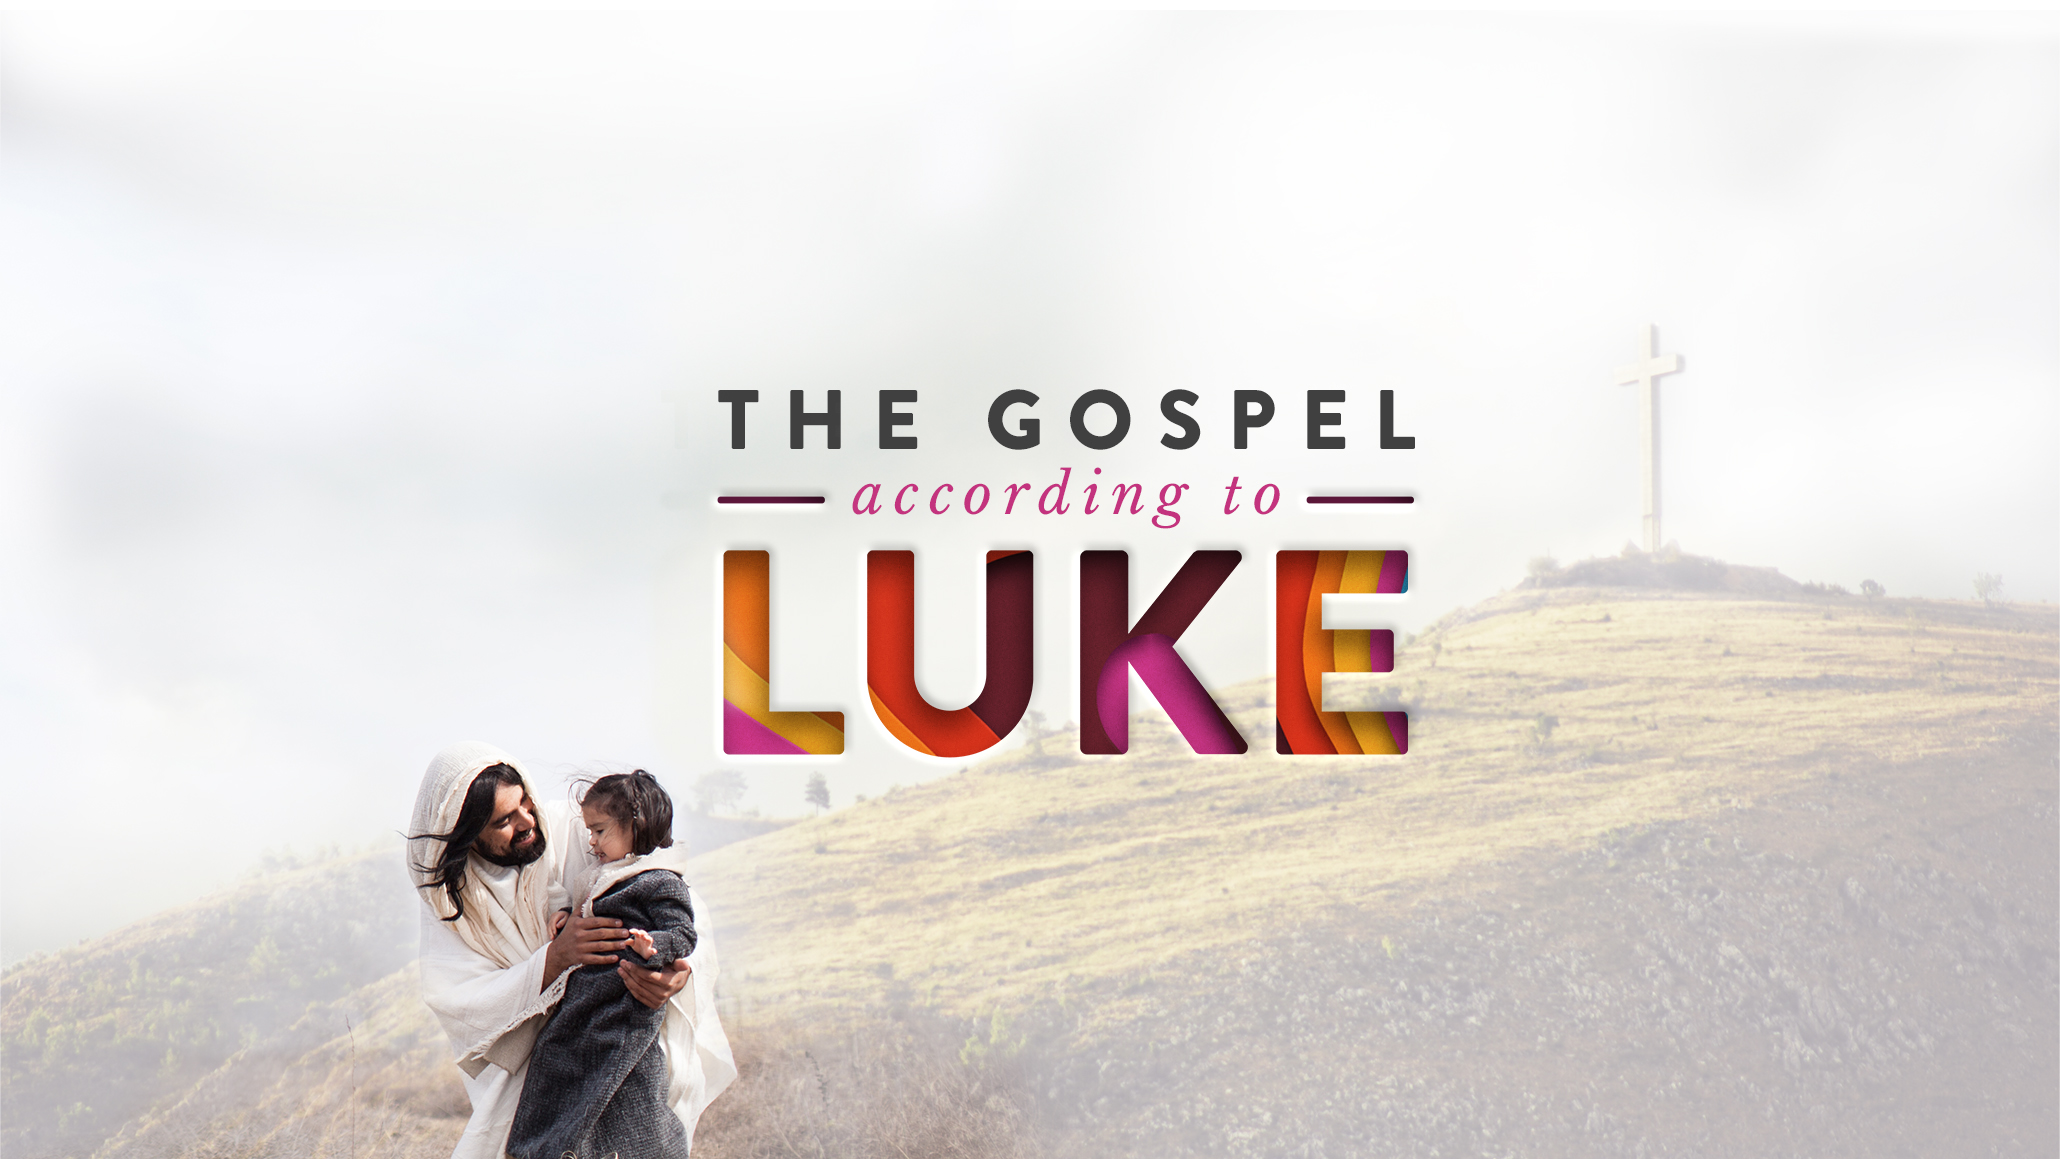 Luke 10:1-12,17